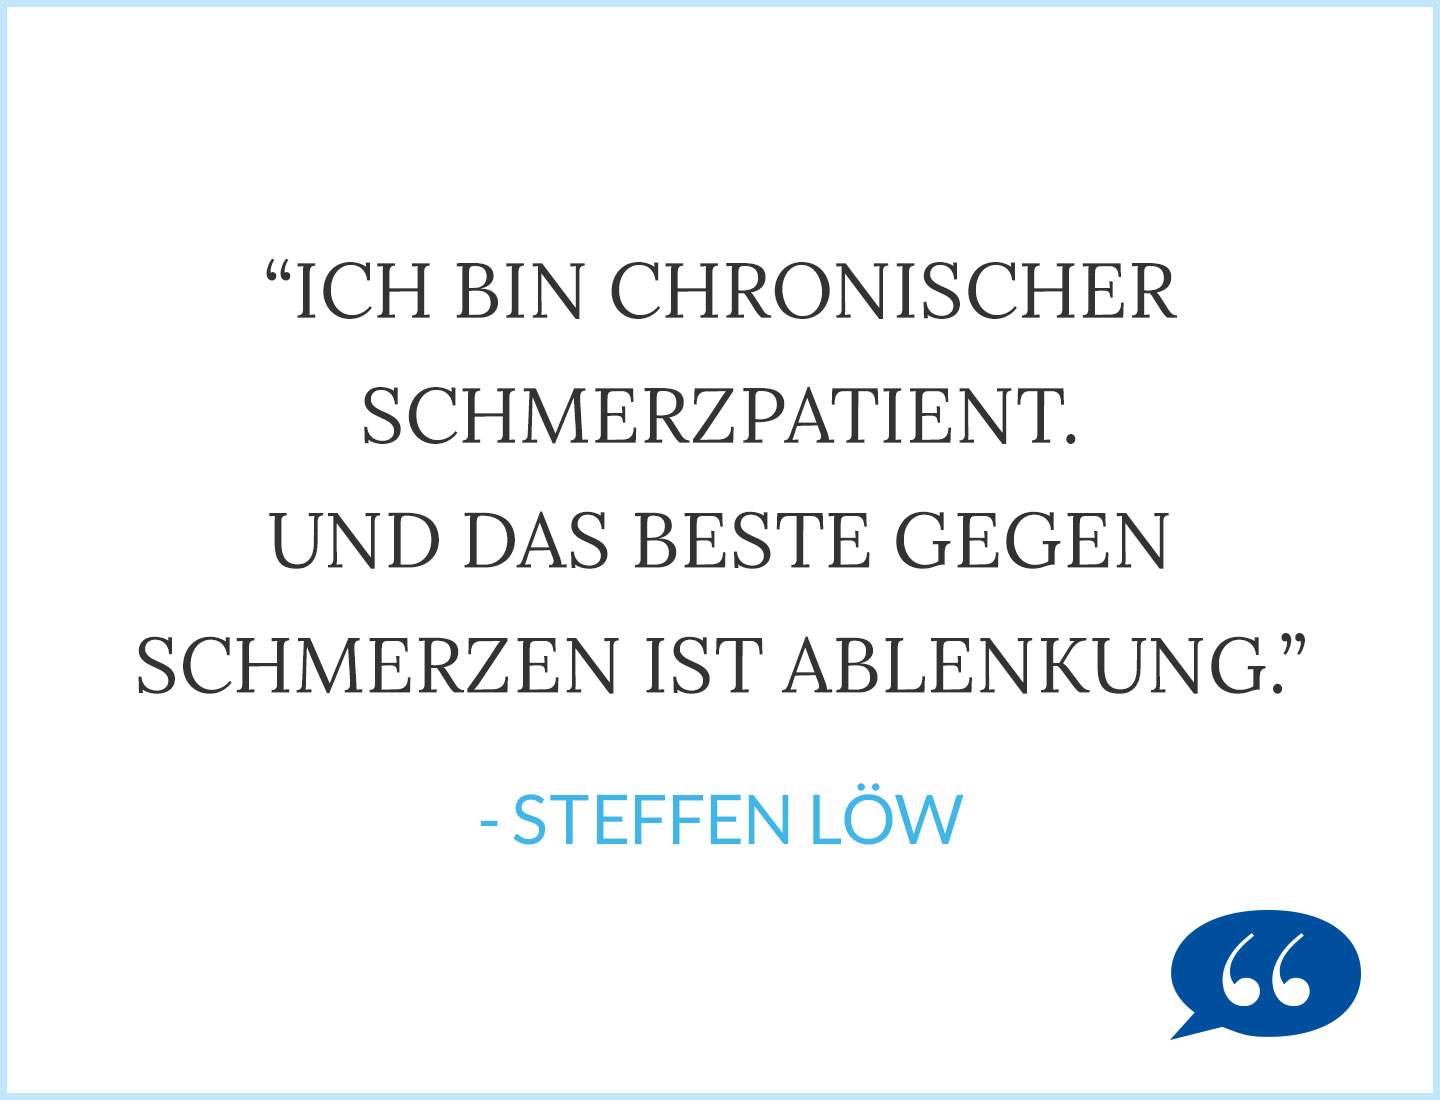 Zitat Steffen Löw Reisen als chronischer Schmerzpatient